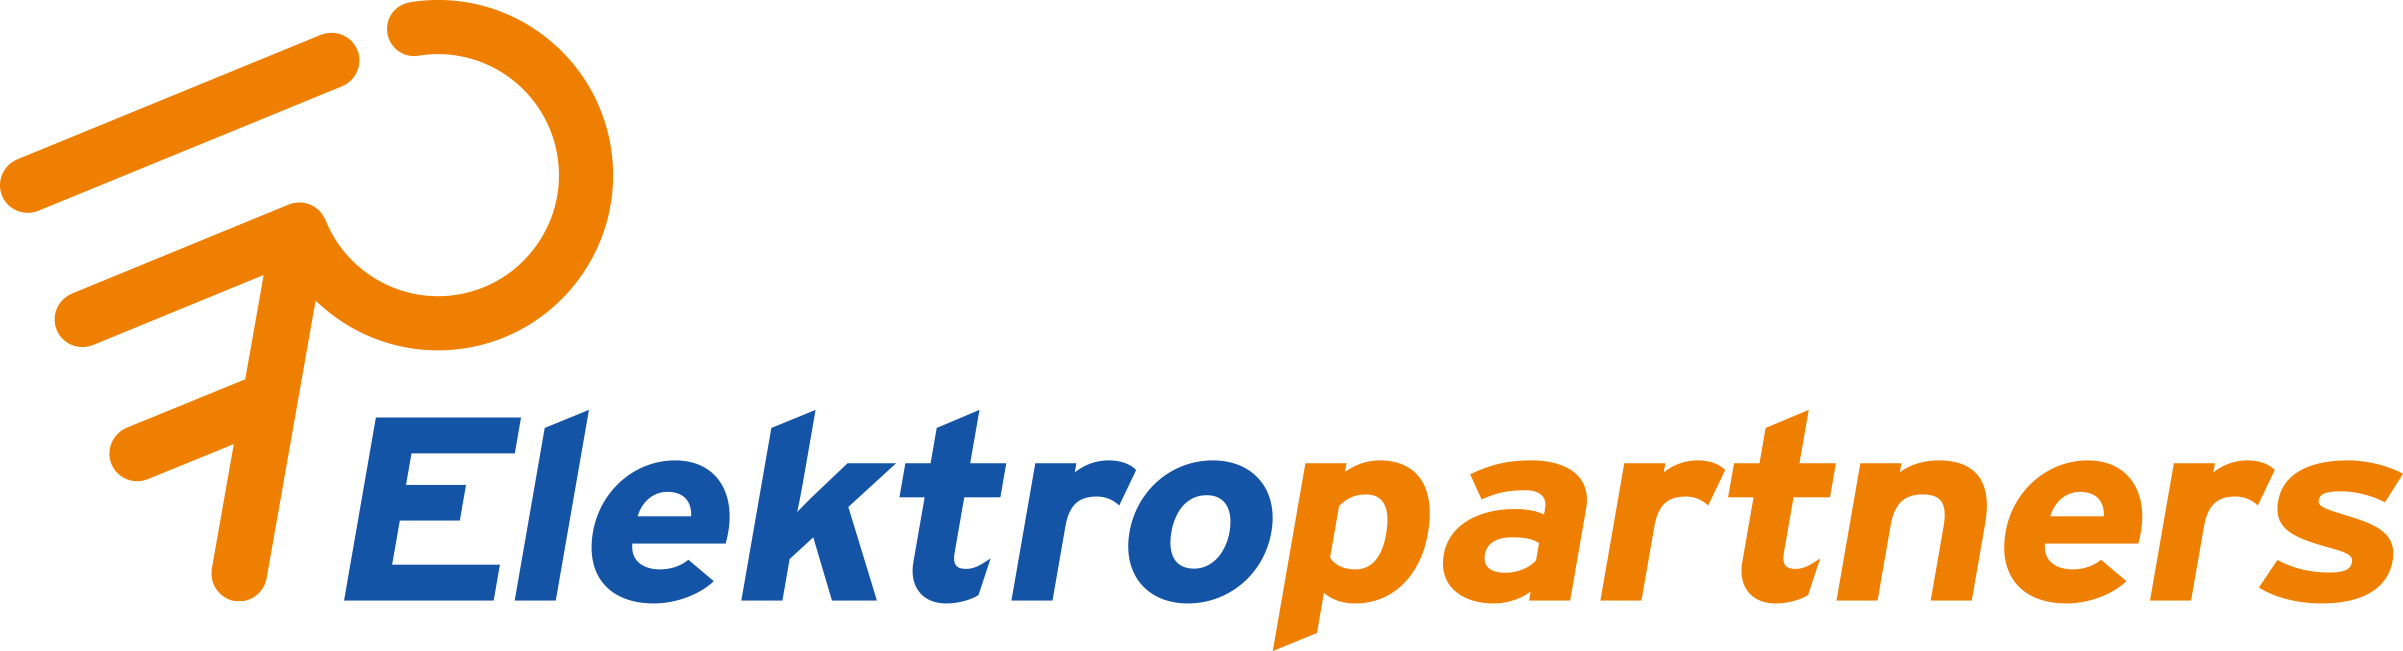 Elektropartners logo